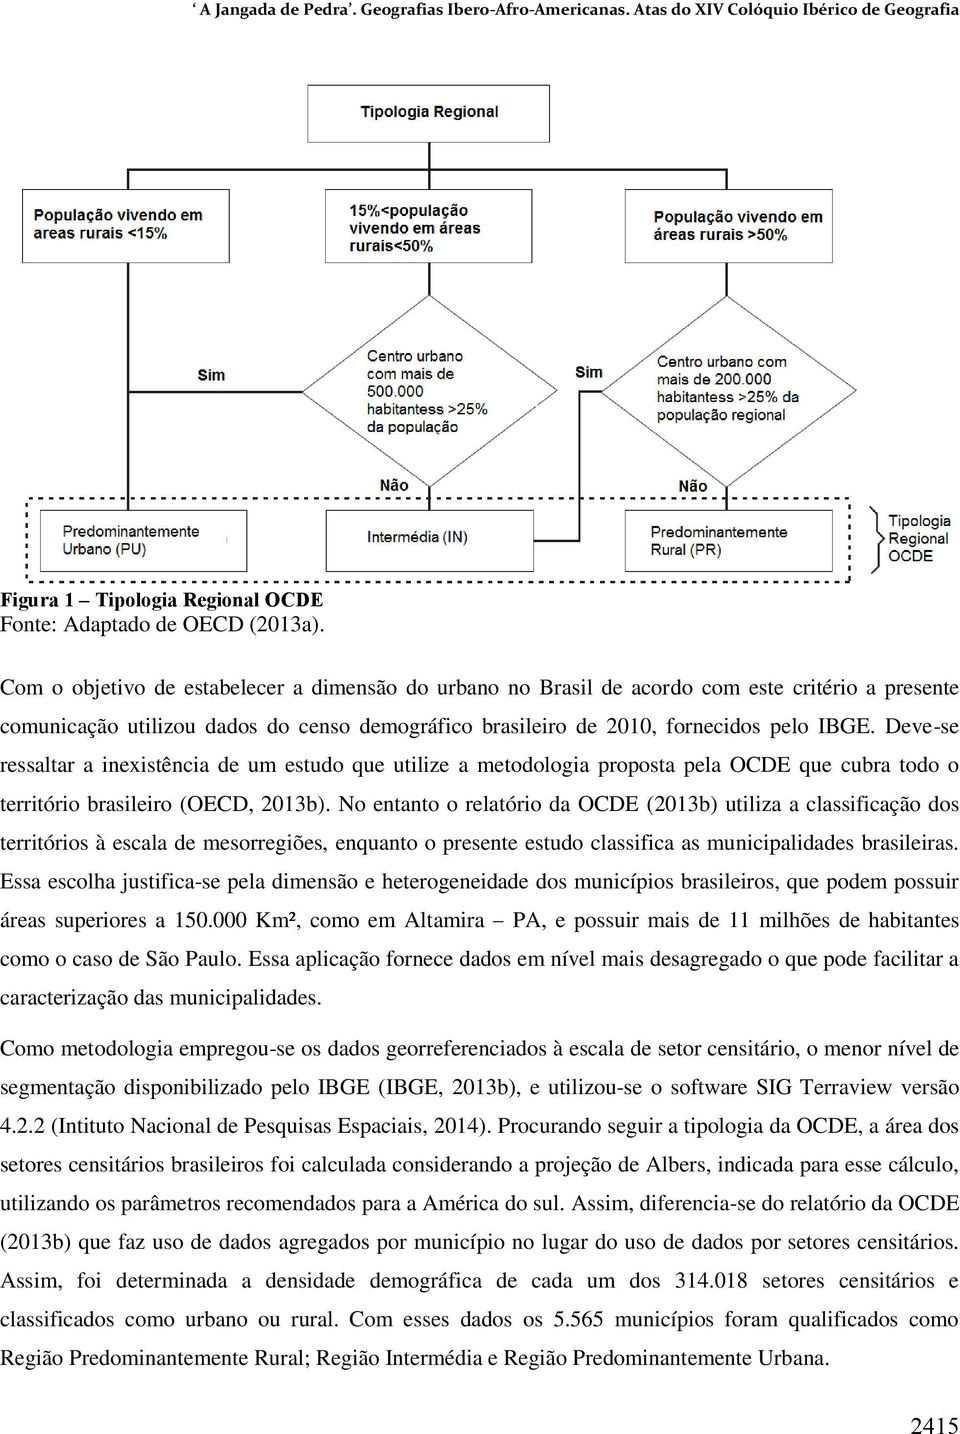 Deve-se ressaltar a inexistência de um estudo que utilize a metodologia proposta pela OCDE que cubra todo o território brasileiro (OECD, 2013b).